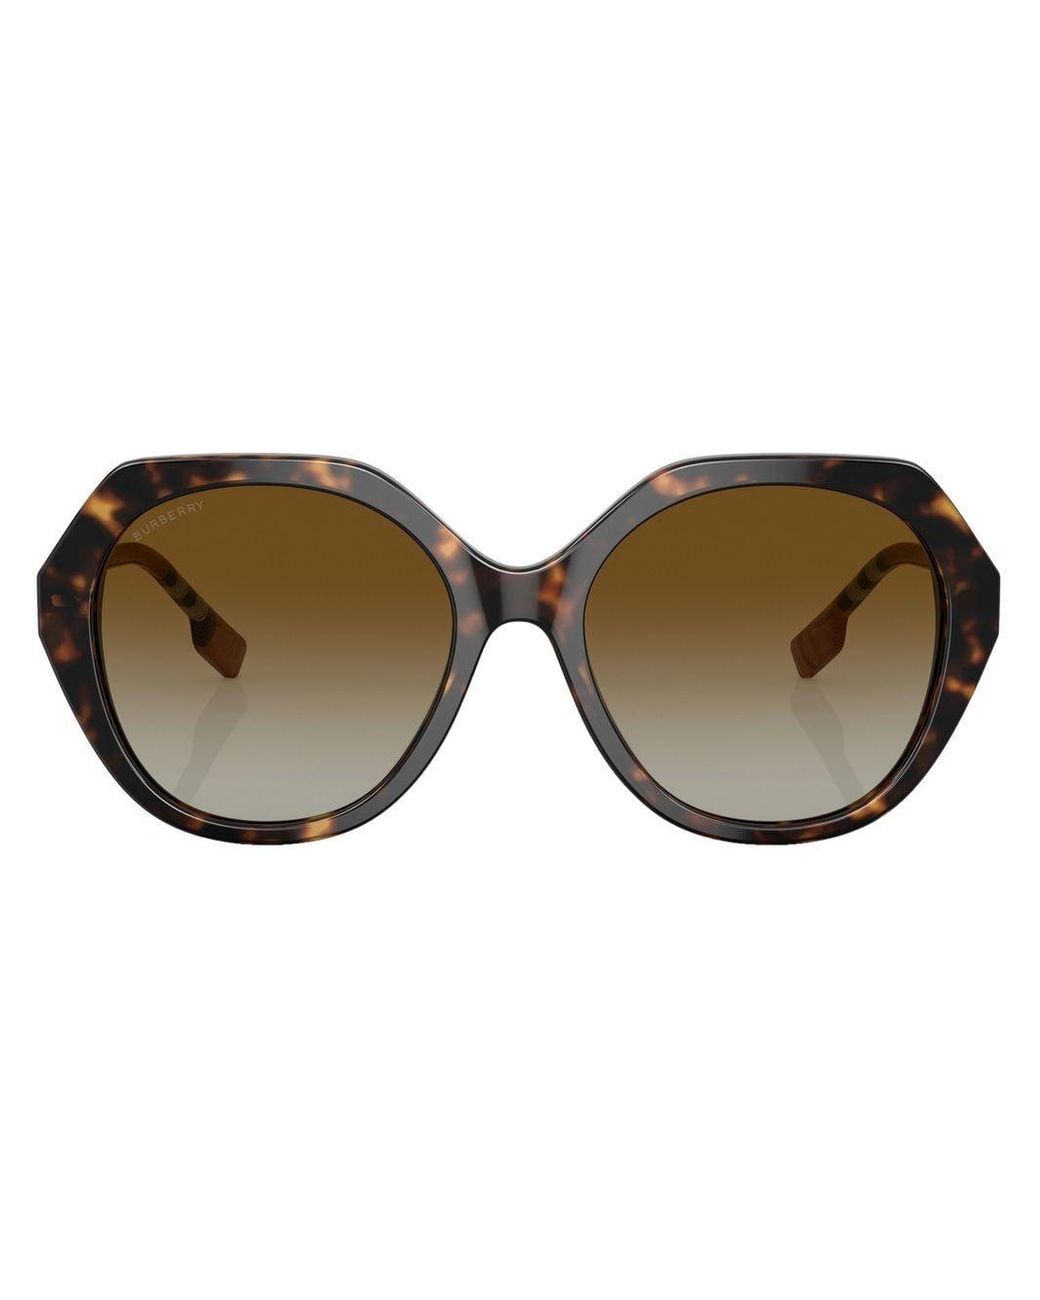 Burberry Vanessa Tortoiseshell Sunglasses in Brown | Lyst